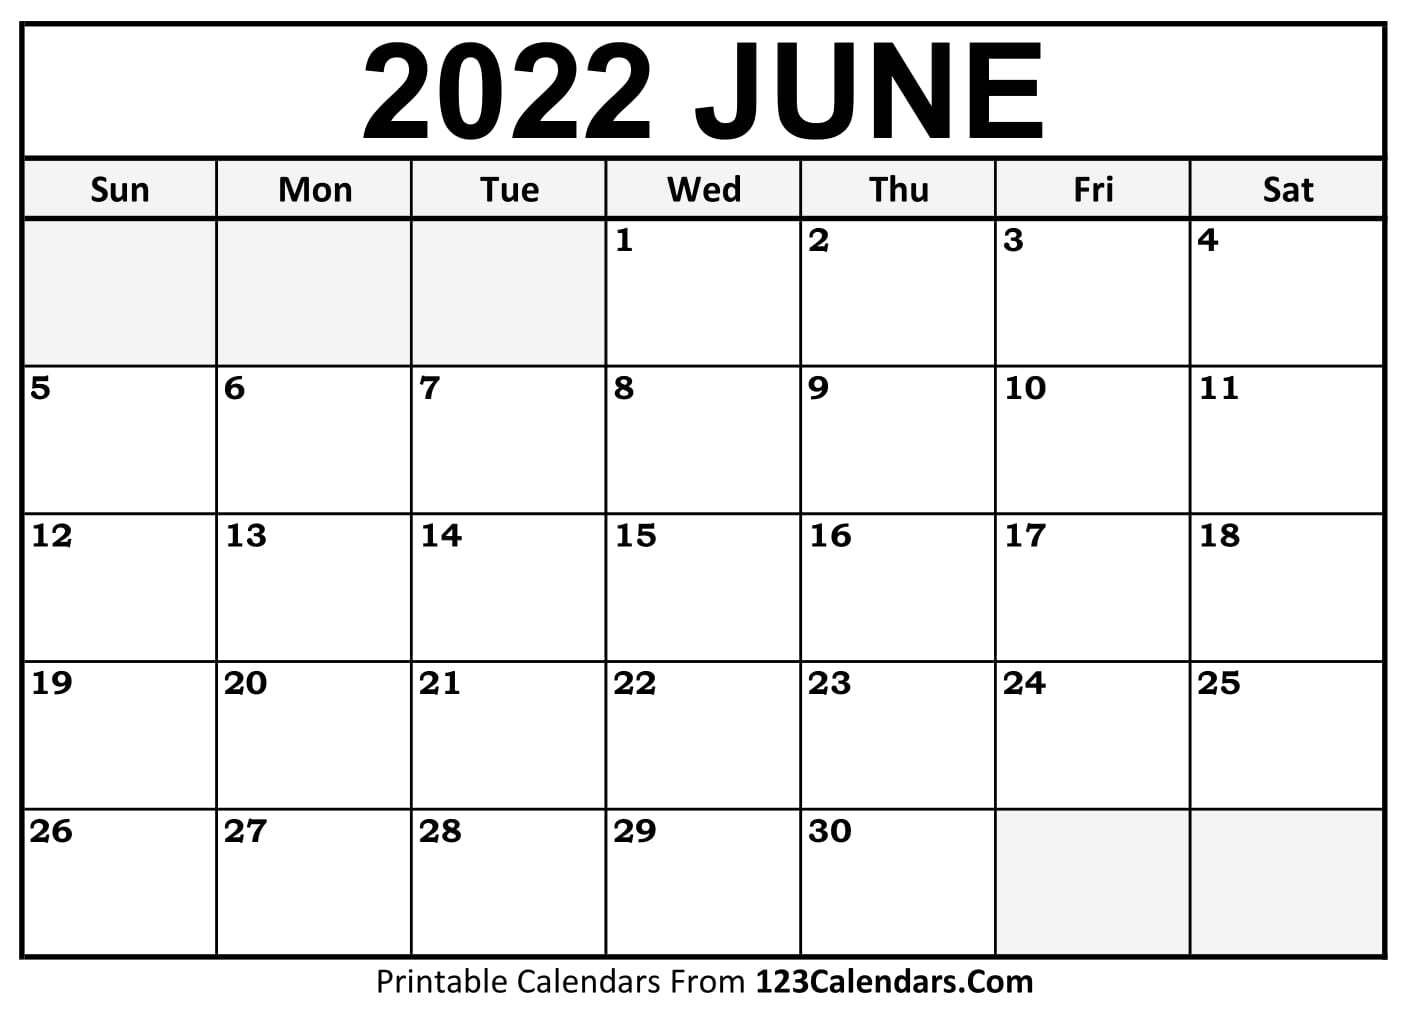 Printable June 2022 Calendar Templates - 123Calendars.com